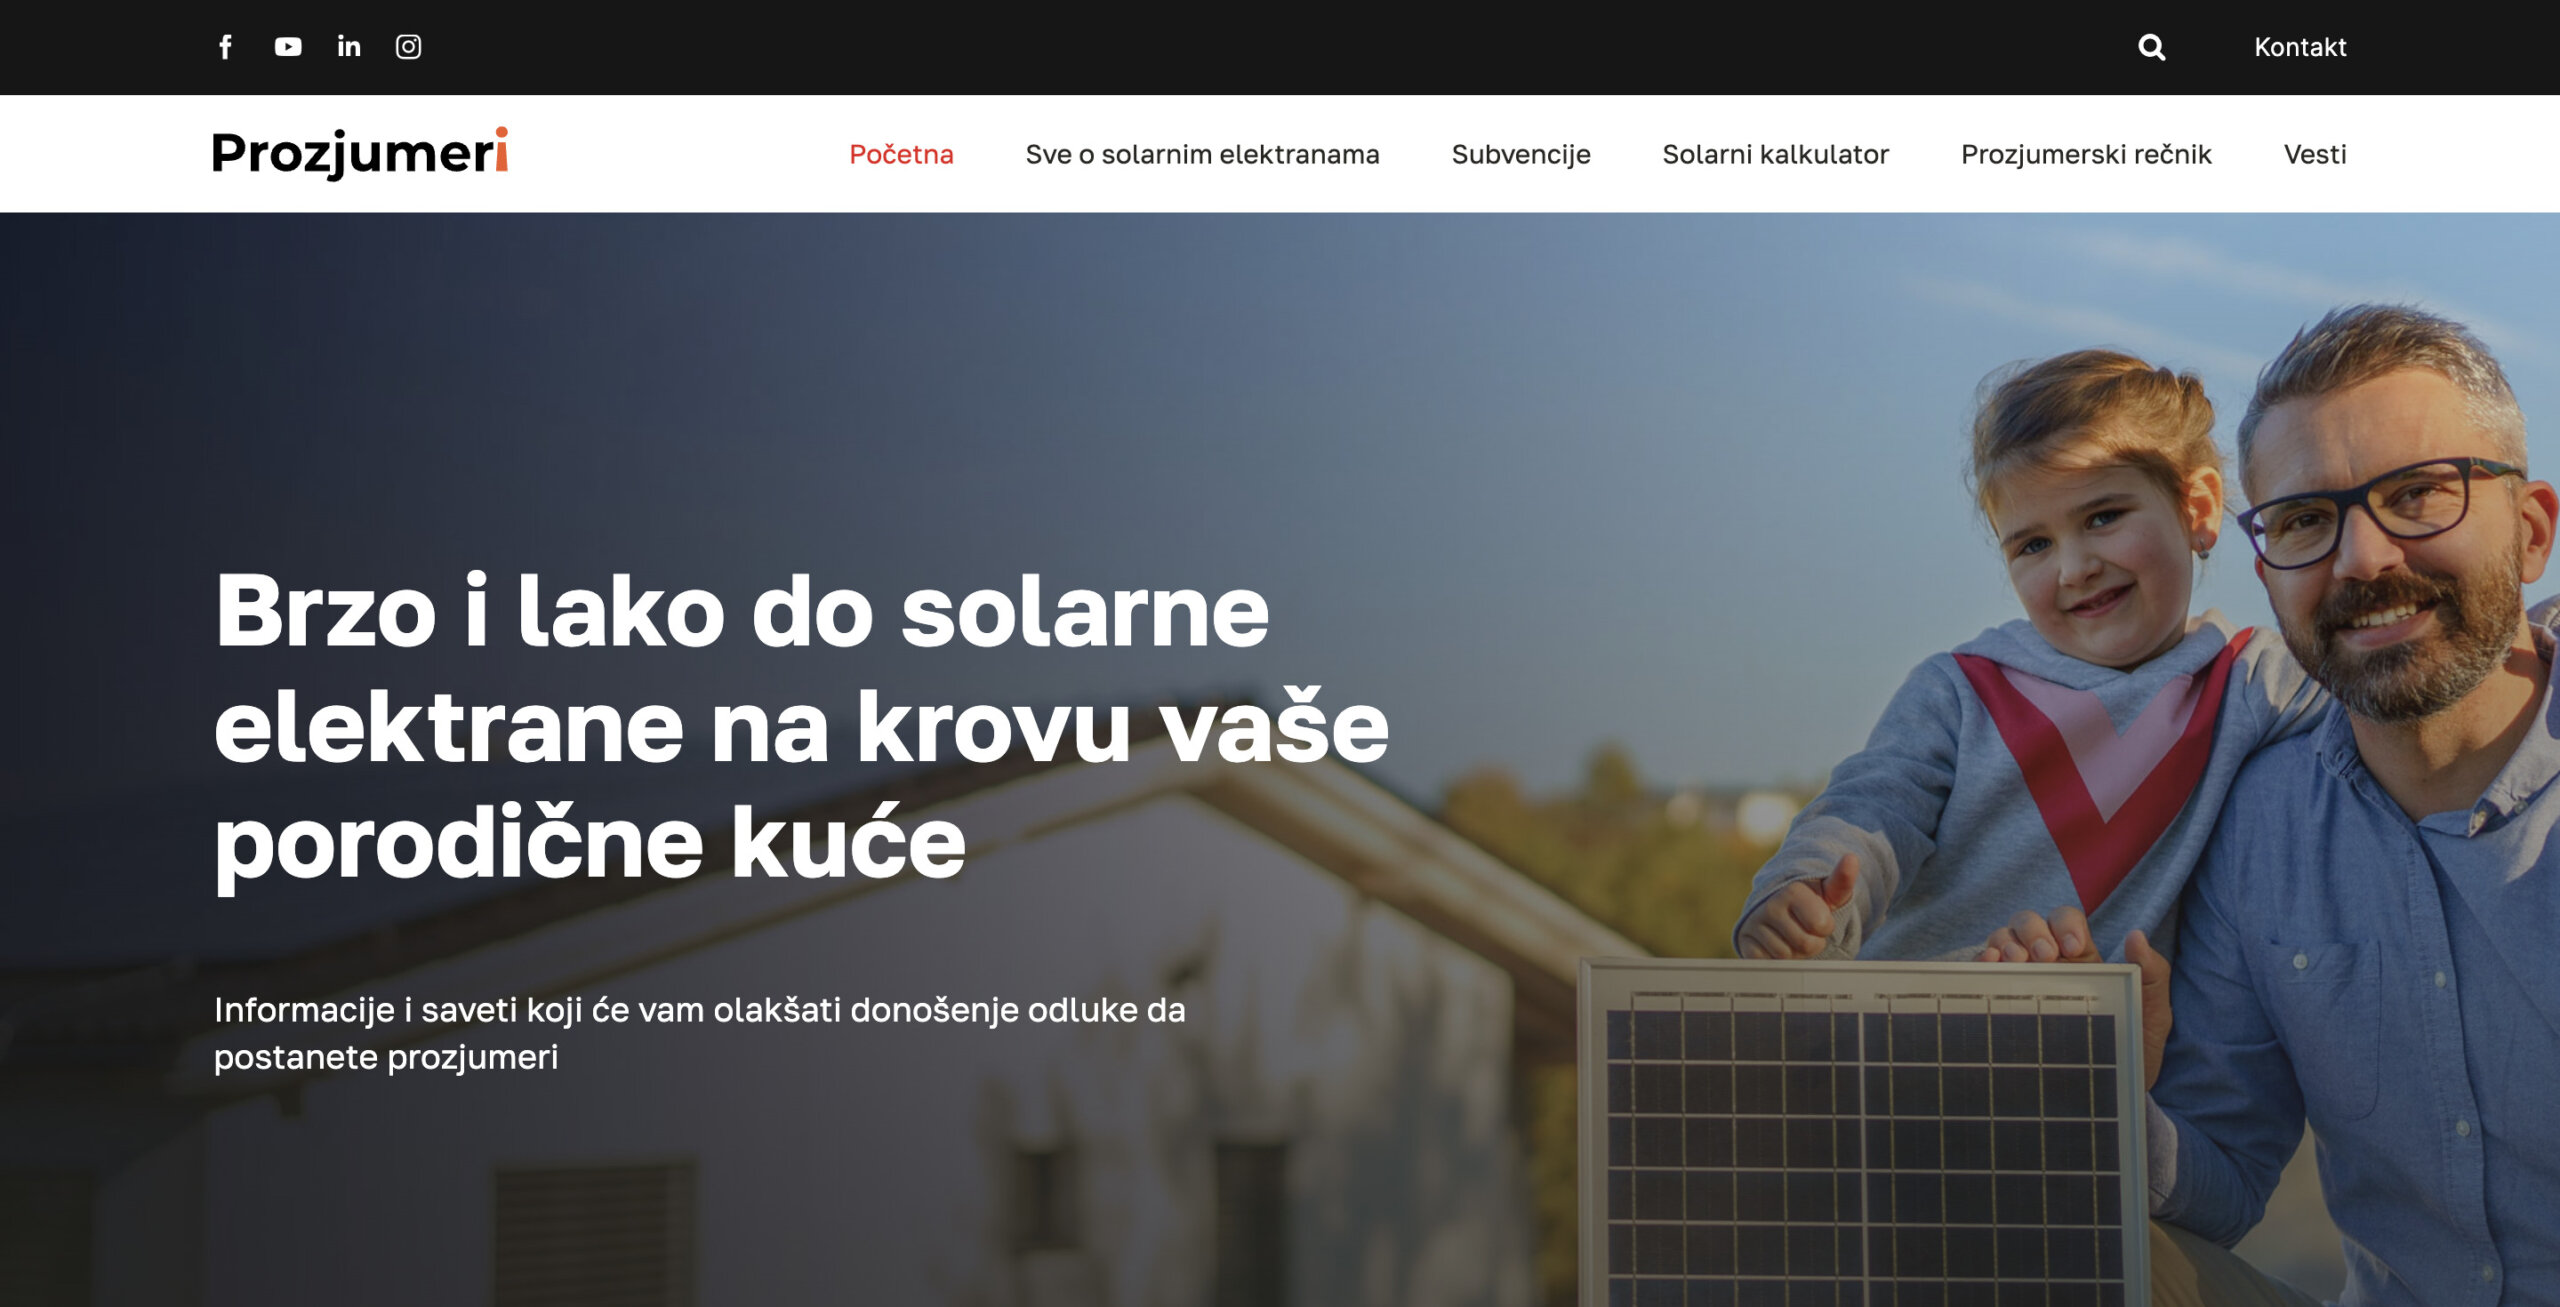 Počeo sa radom portal za prozjumere: Kako proizvoditi električnu energiju za sopstvene potrebe? 2